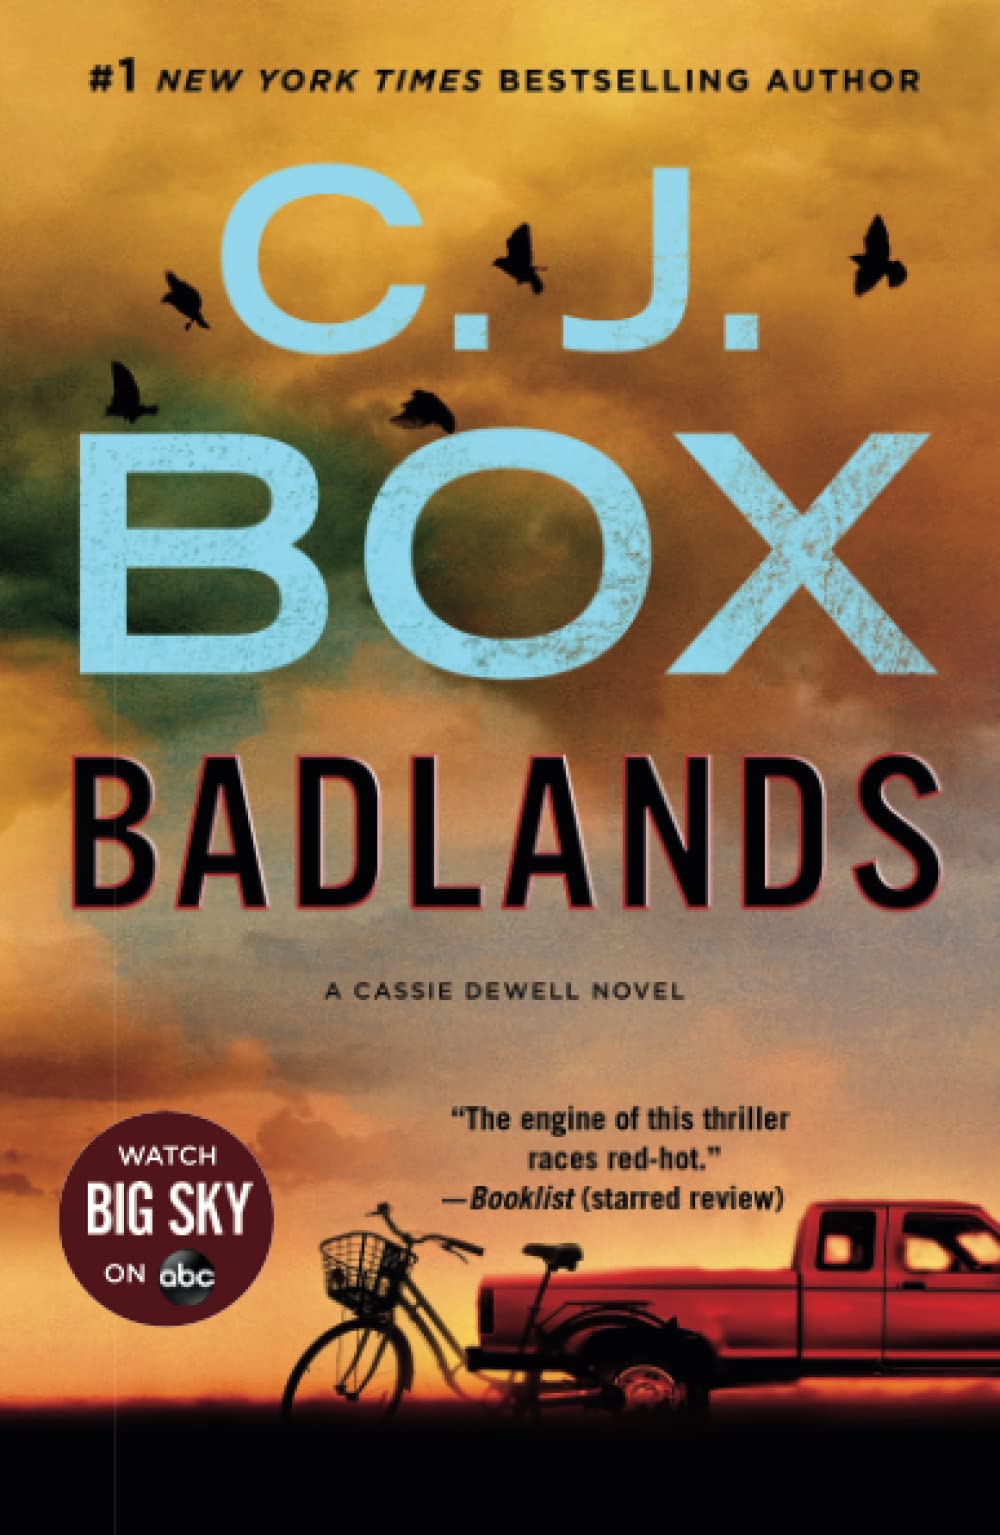 Badlands: A Cassie Dewell Novel (Cassie Dewell Novels #3)